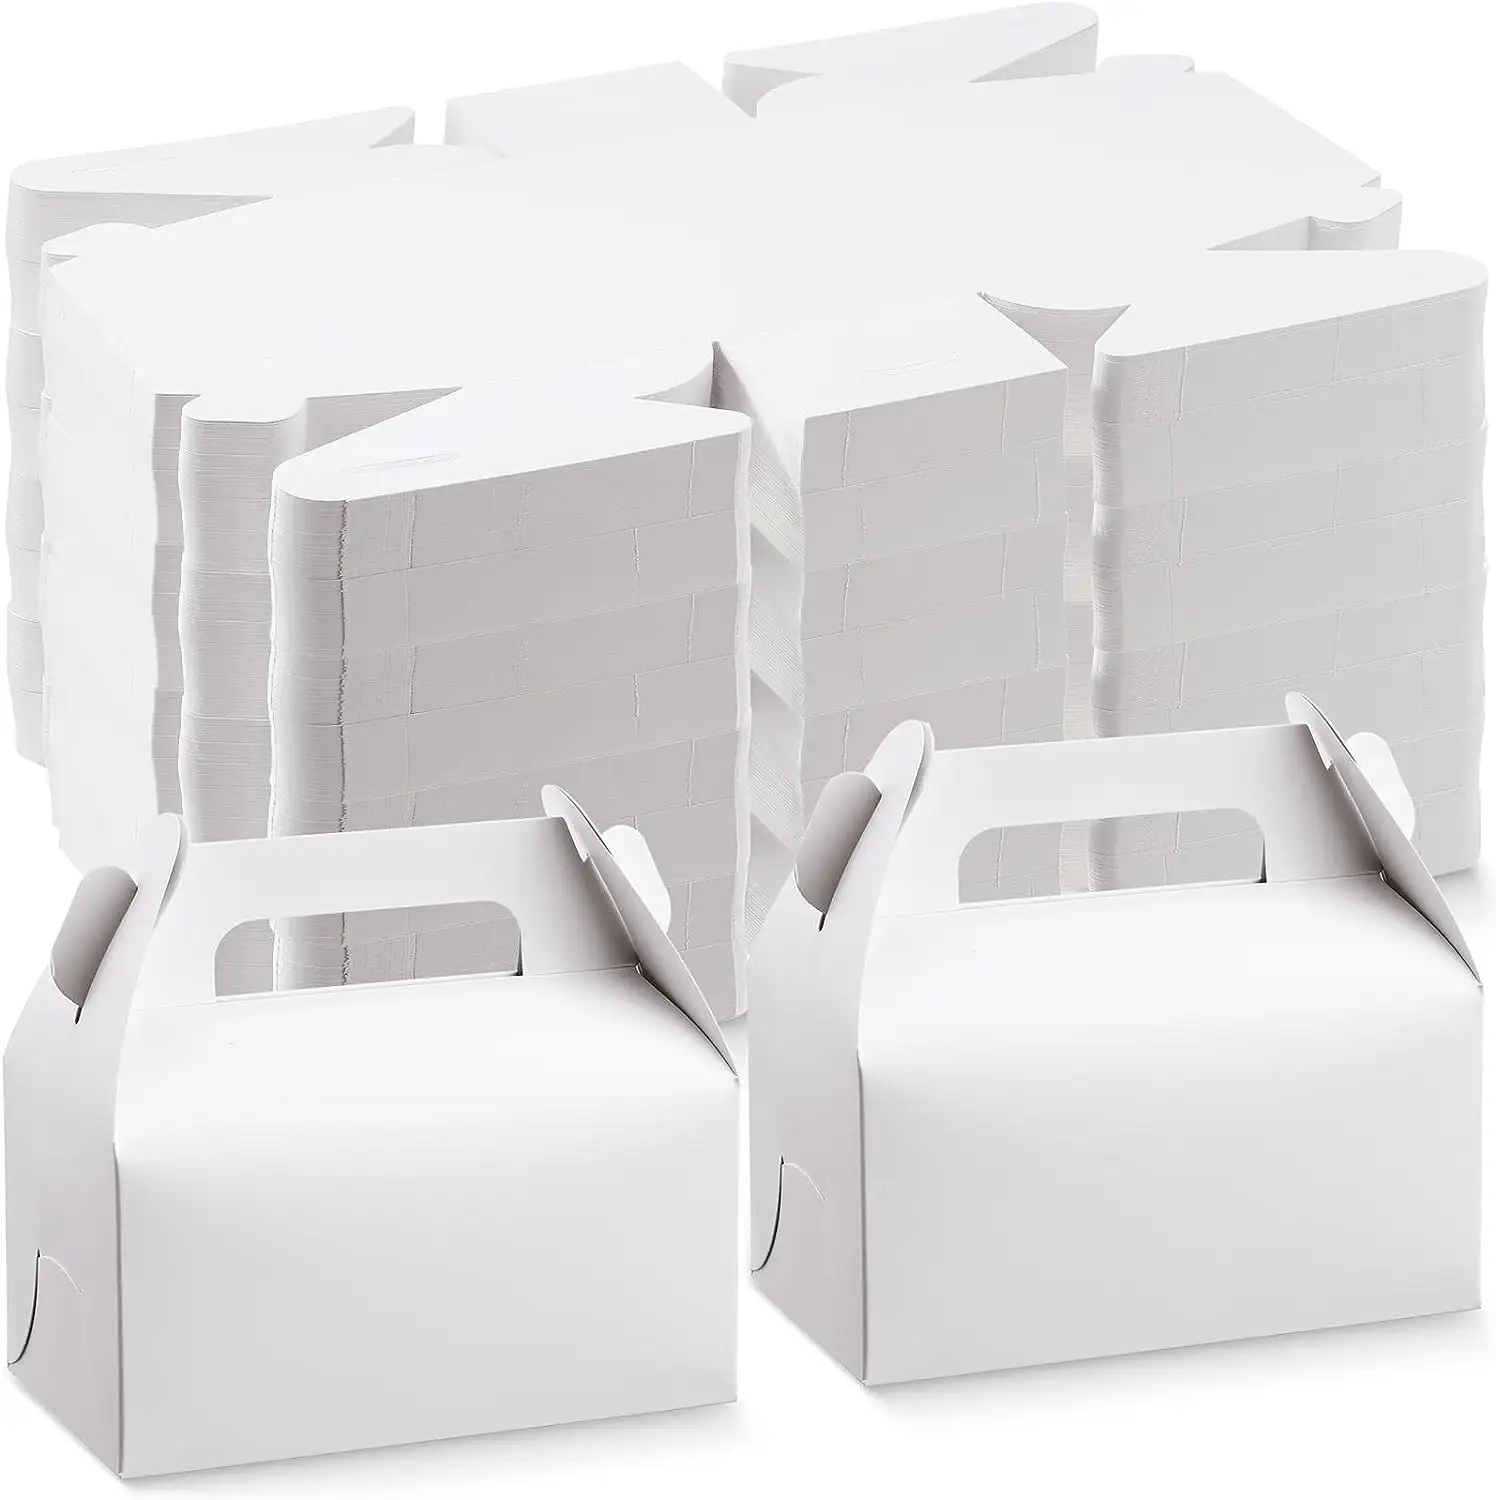 10PCS DIY Crafting Cubeปัจจุบันงานแต่งงานวันเกิดพรรคว่างเปล่ากล่องGableกล่องของขวัญกล่องกระดาษห่อของขวัญเค้กCandyBox